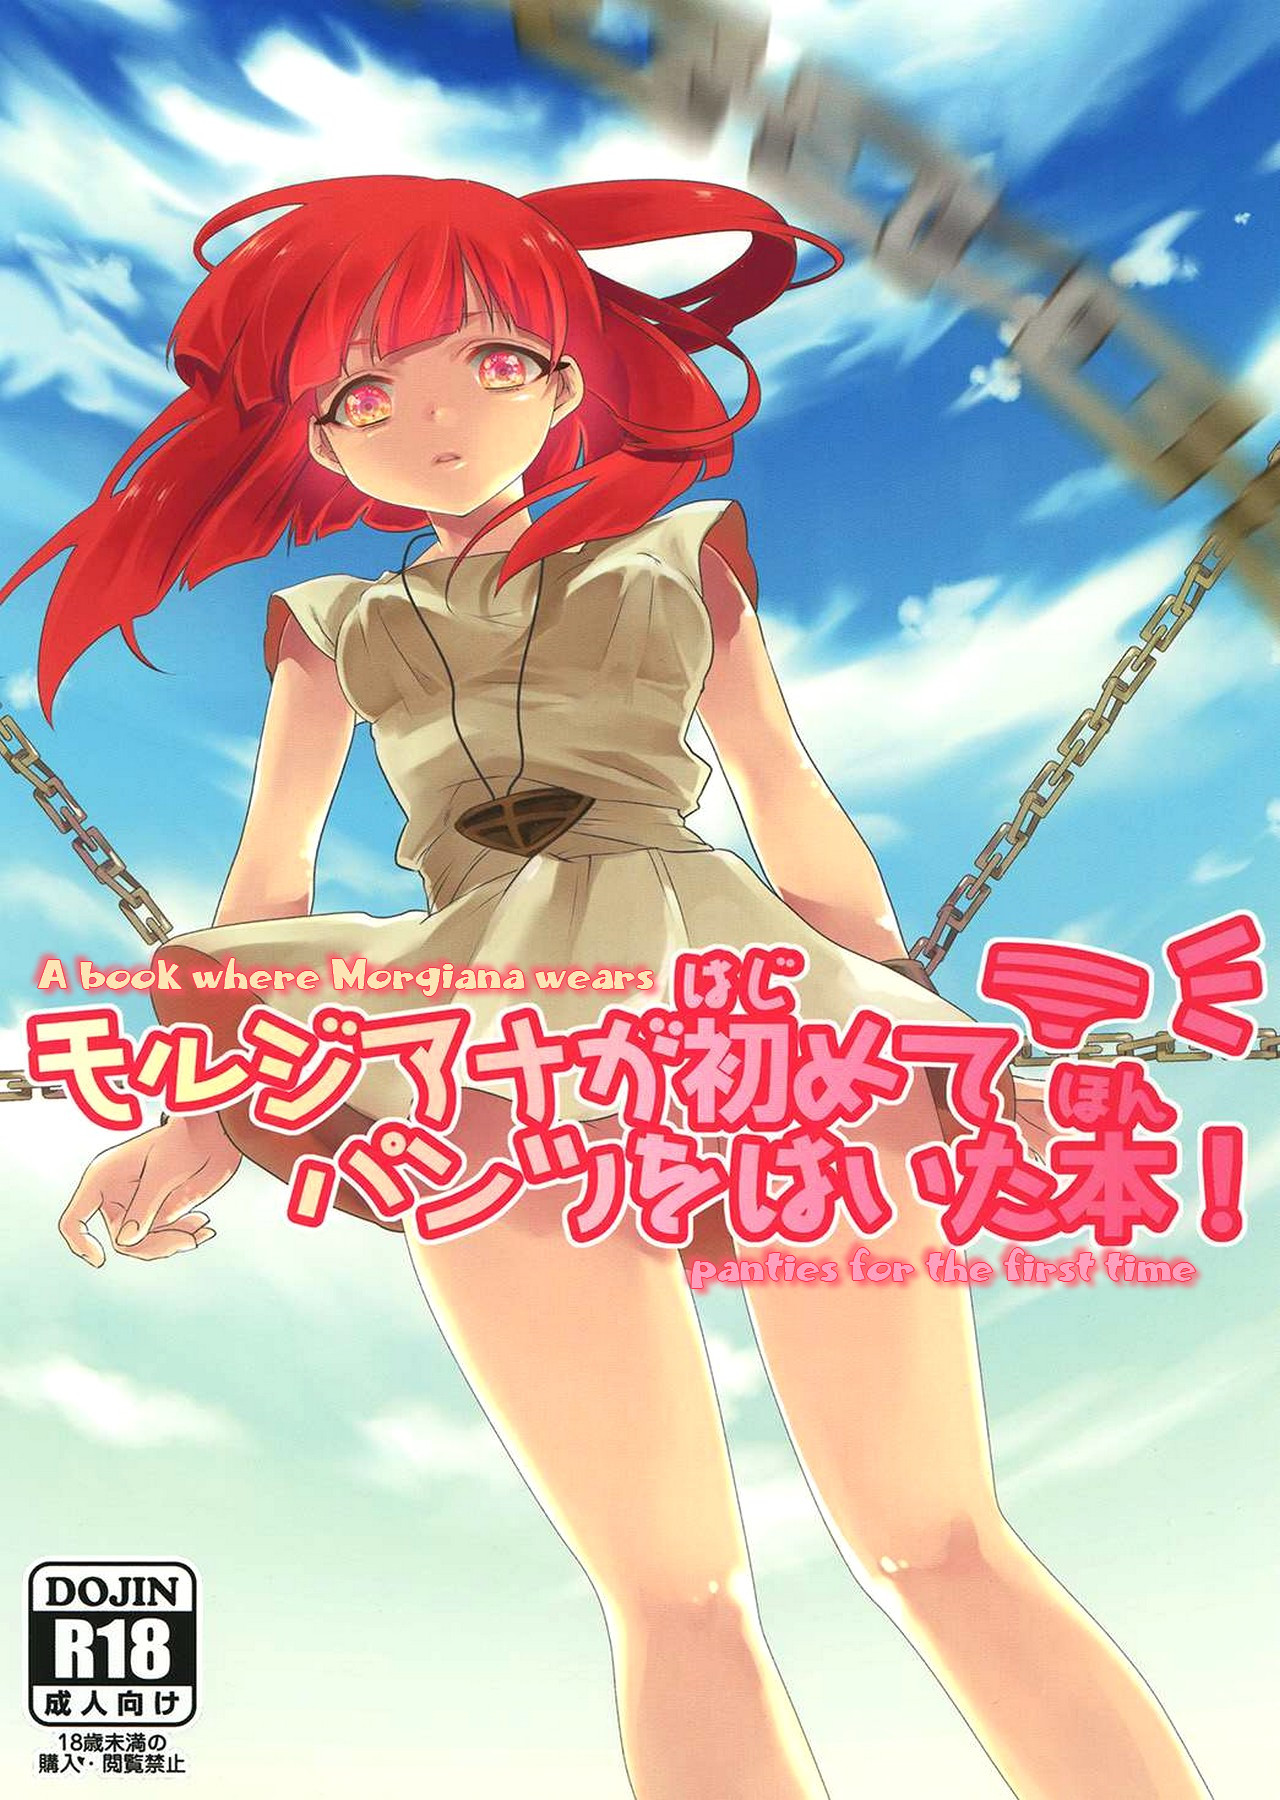 Hentai Manga Comic-v22m-A Book Where Morgiana Wears Panties For The First Time-Read-1